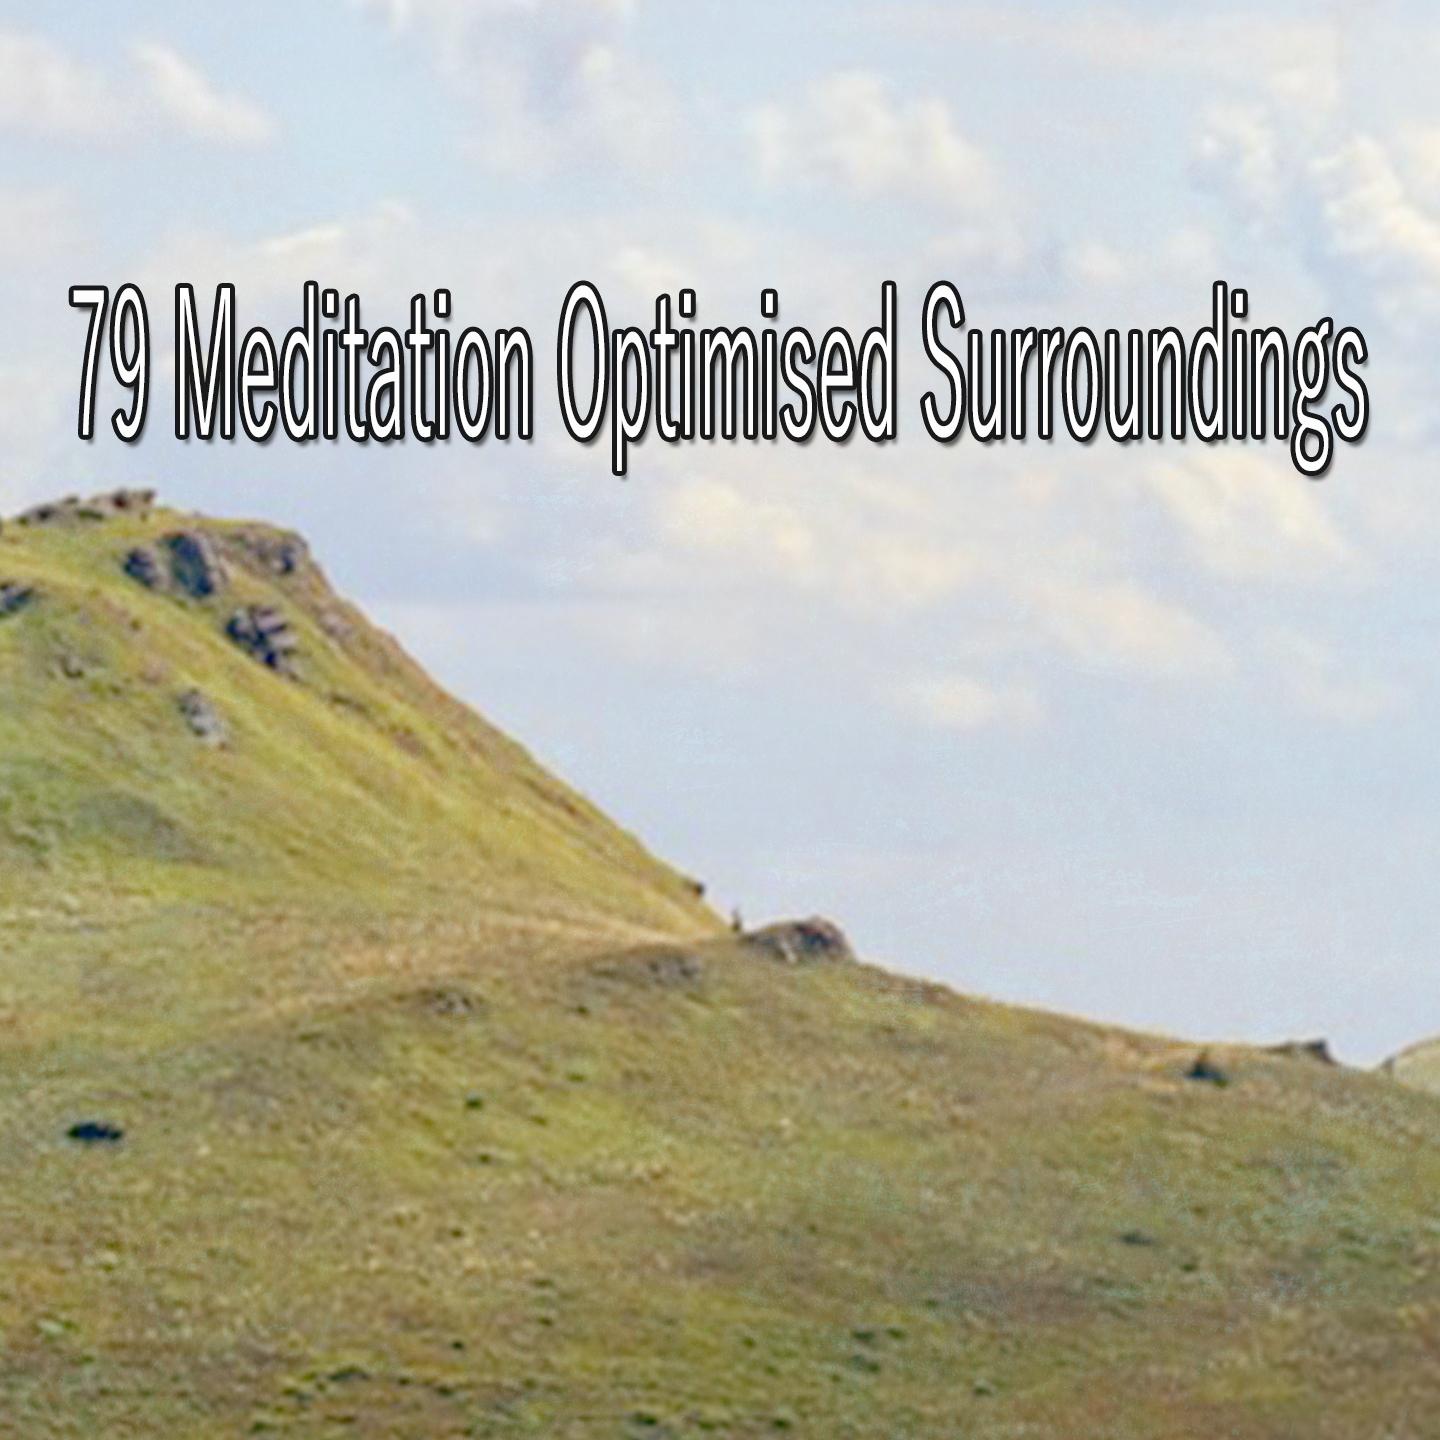 79 Meditation Optimised Surroundings